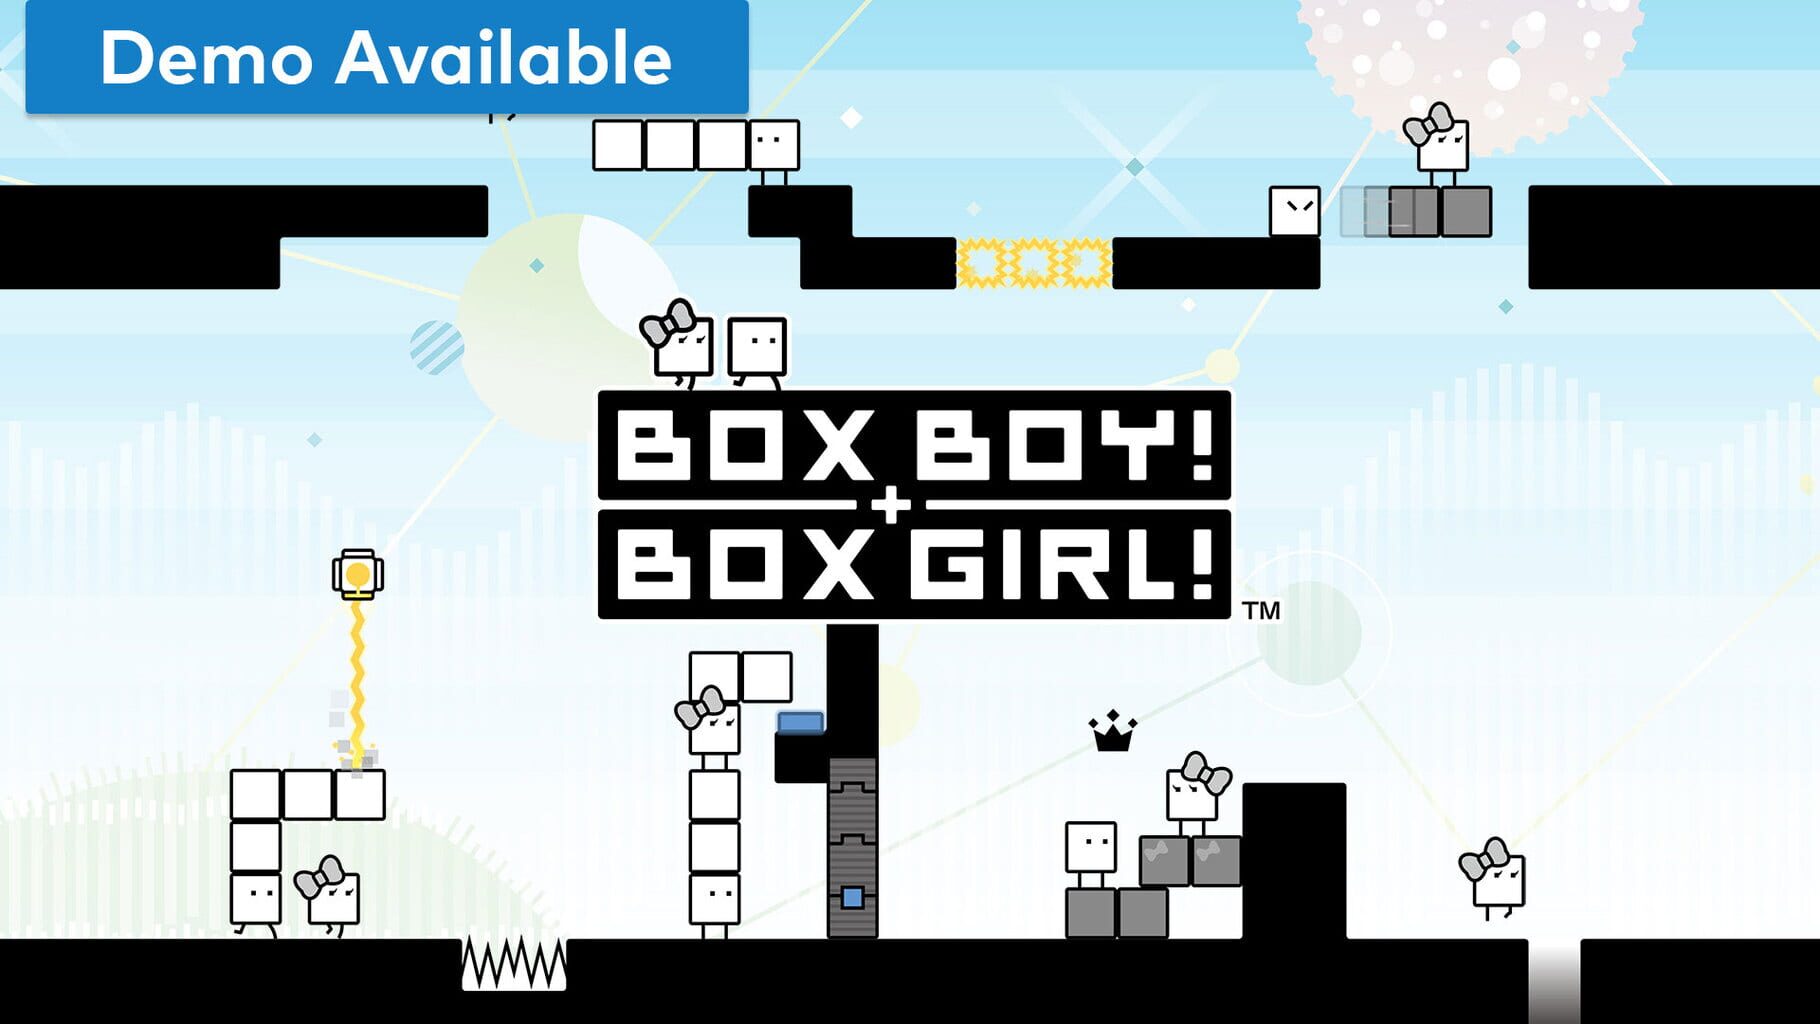 Box Boy! + Box Girl! artwork